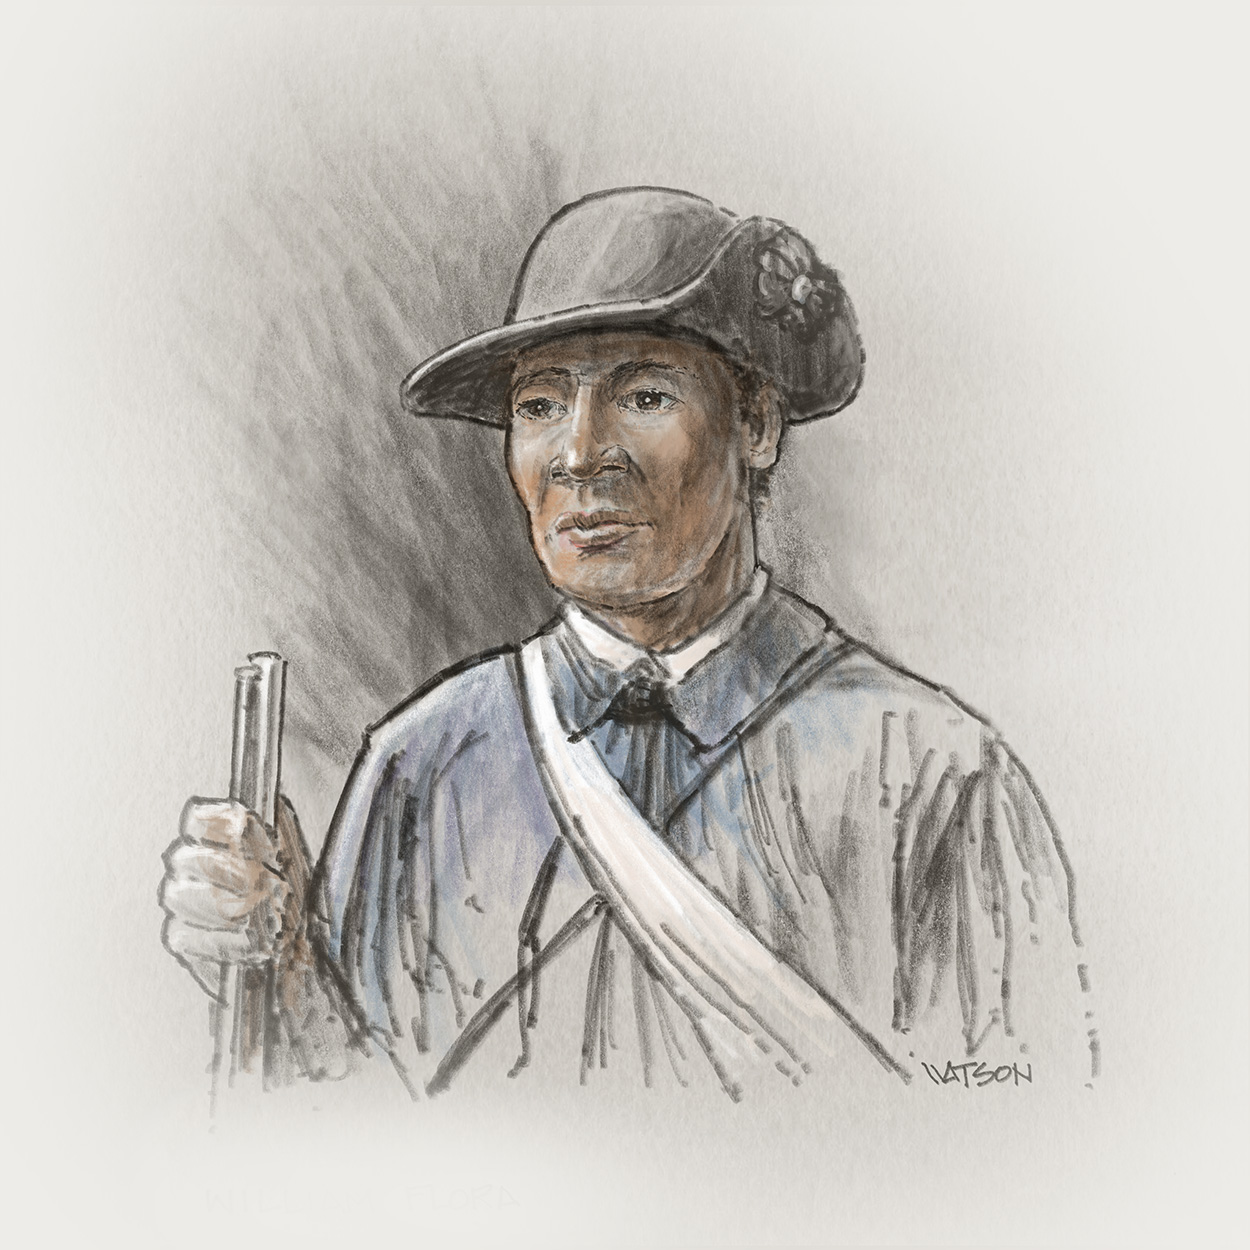 Drawn portrait of William Flora